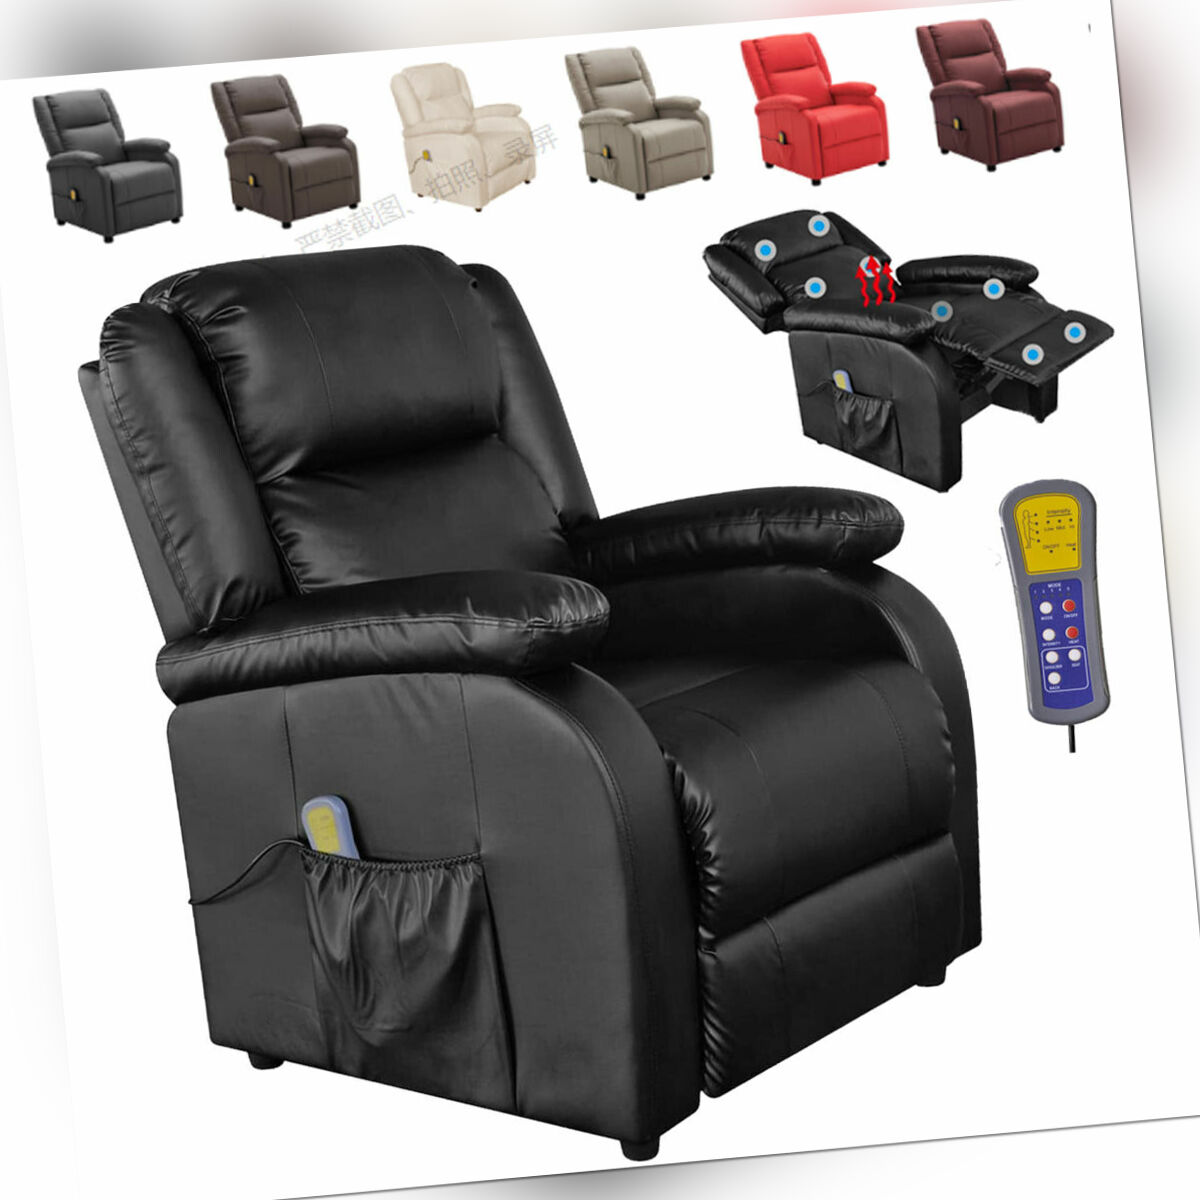 Elektrisch Relaxsessel Massagesessel Fernsehsessel Heizung Liegefunktion Auswahl